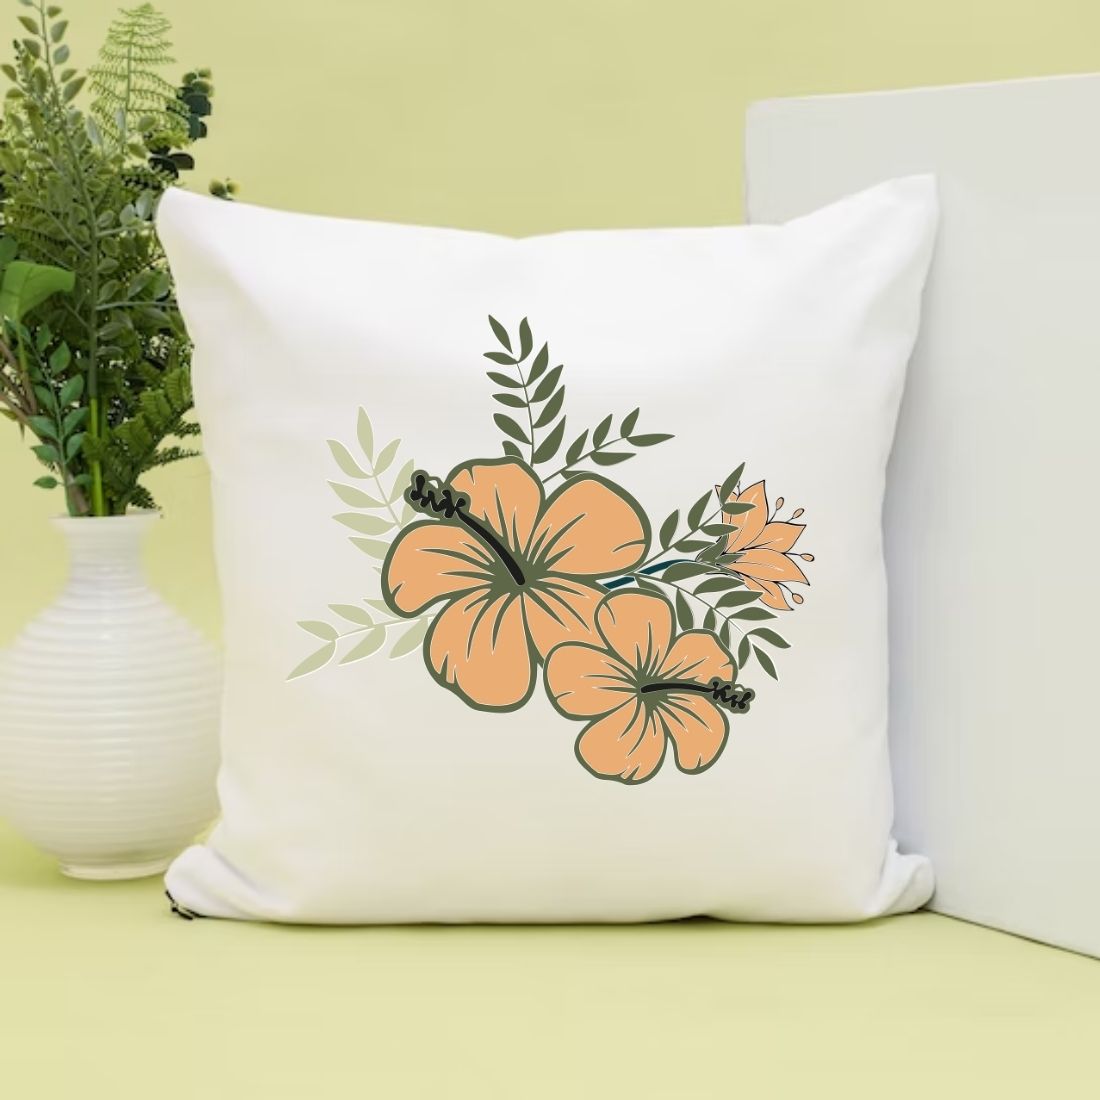 Floral Frame Pillow Mockup Background Design cover image.